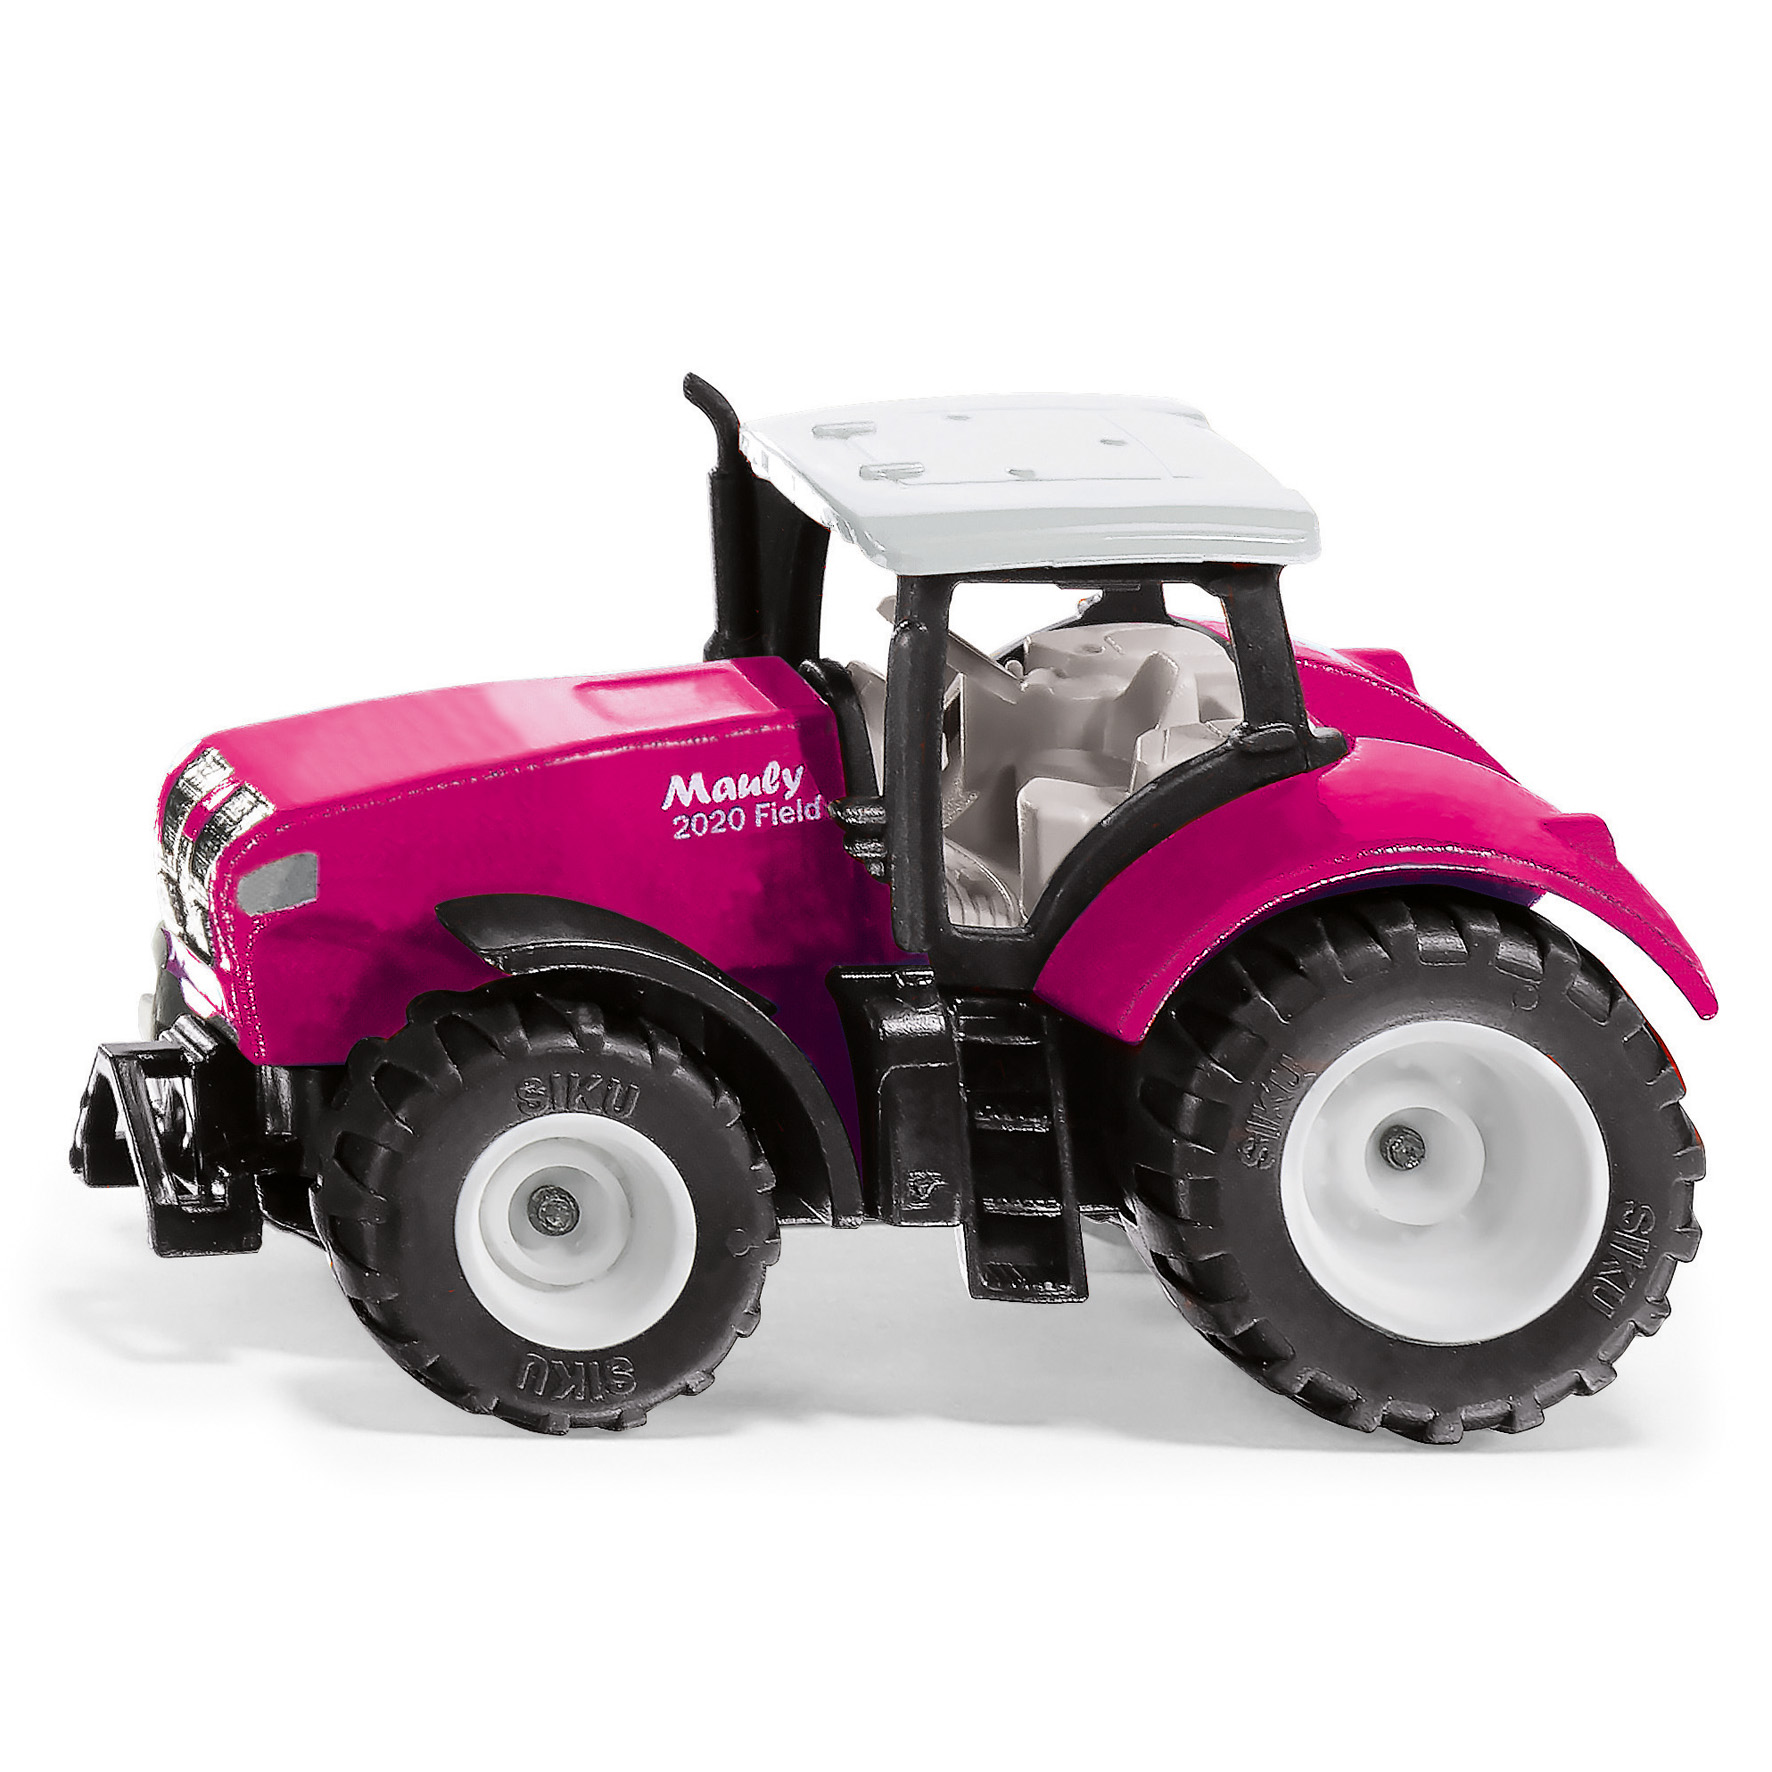 Siku mauly x540 tractor pink